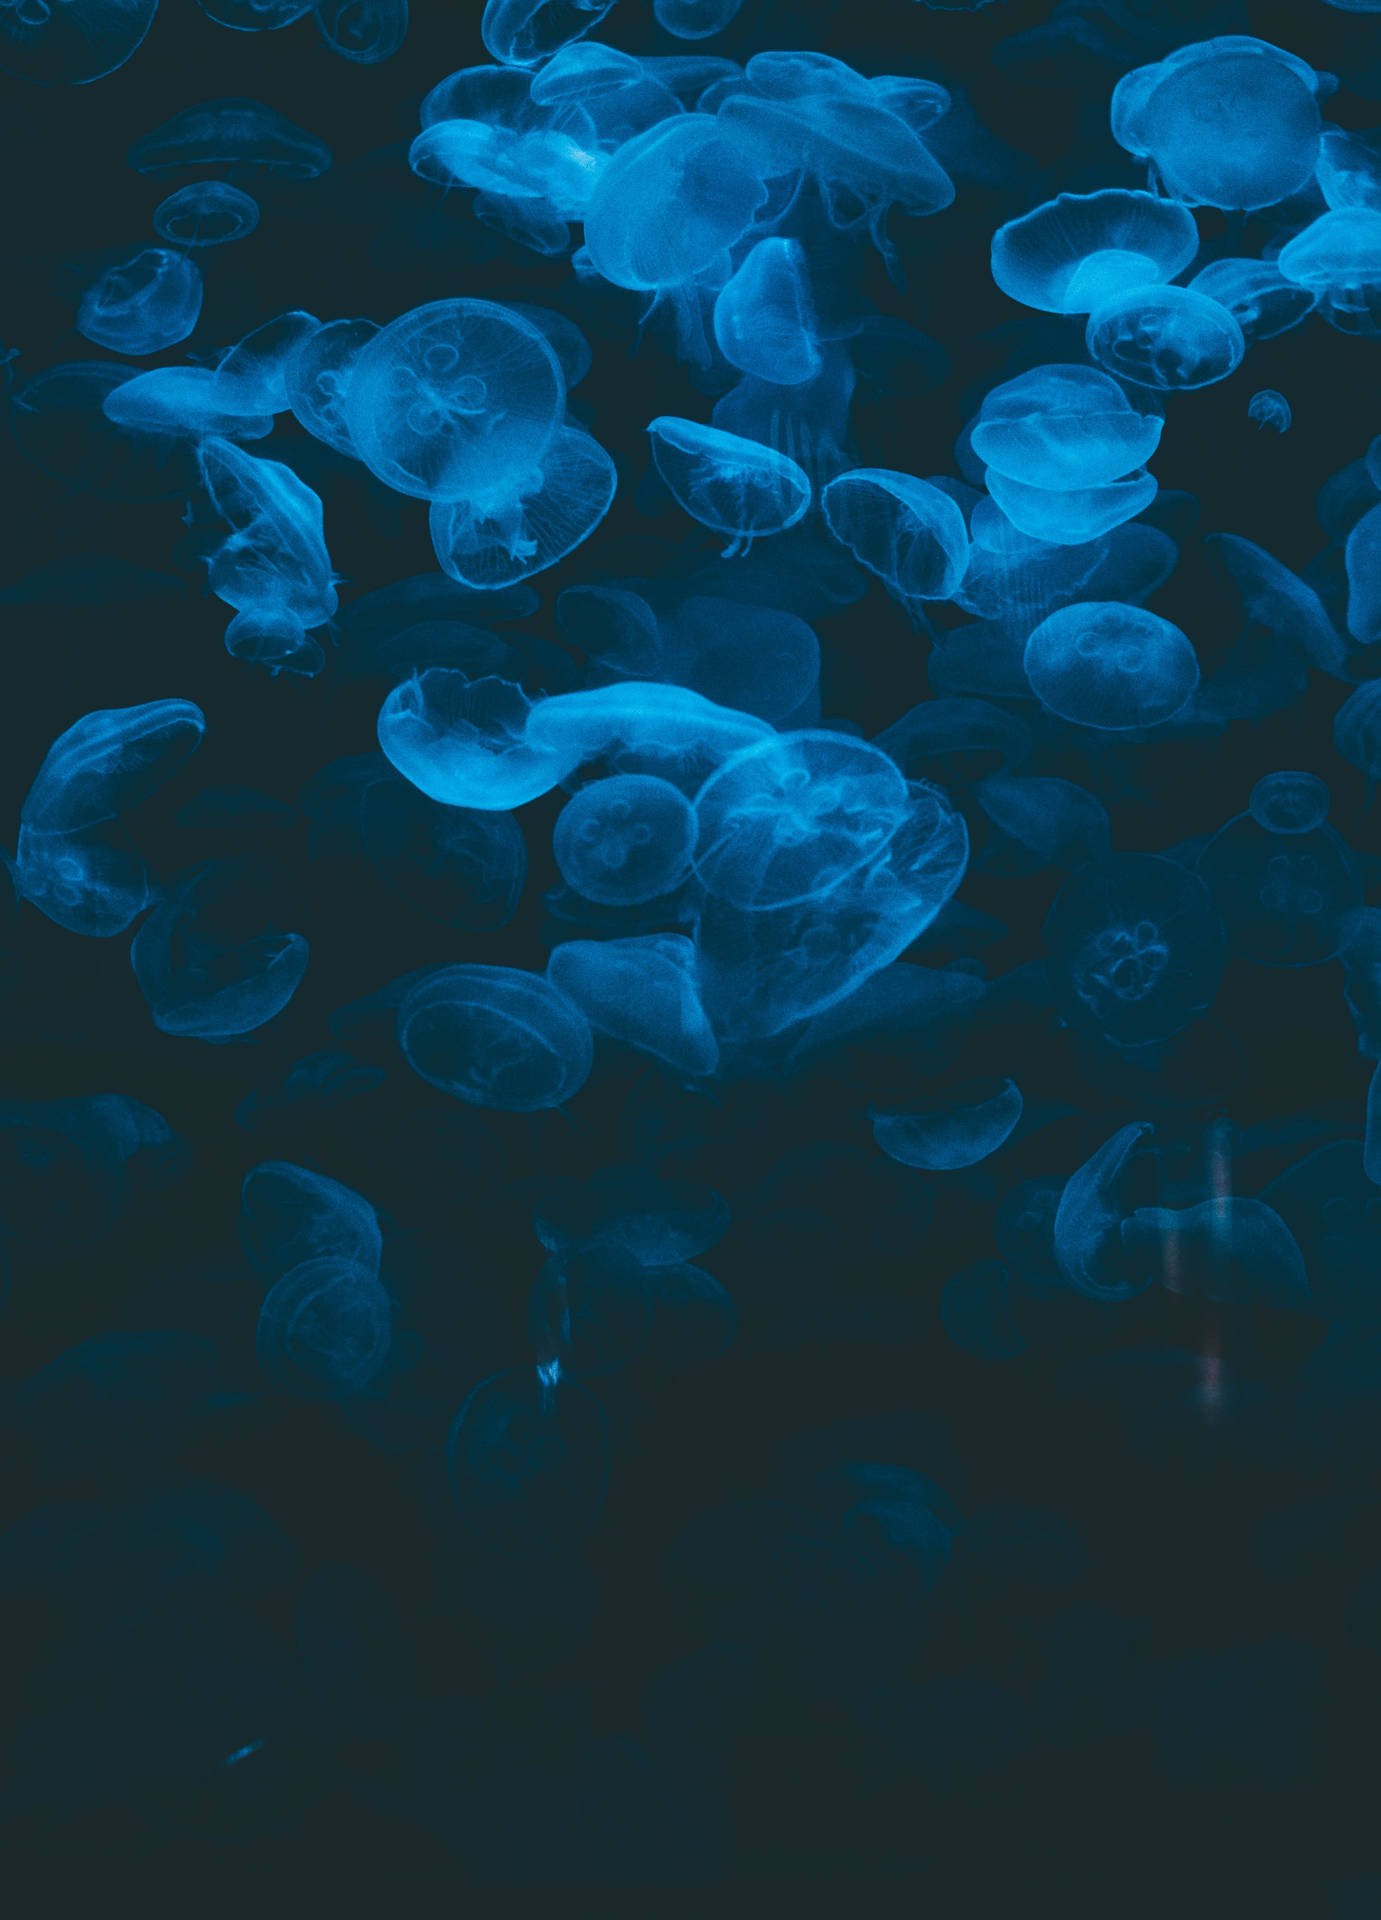 Dark Blue Jellyfish Underwater Background